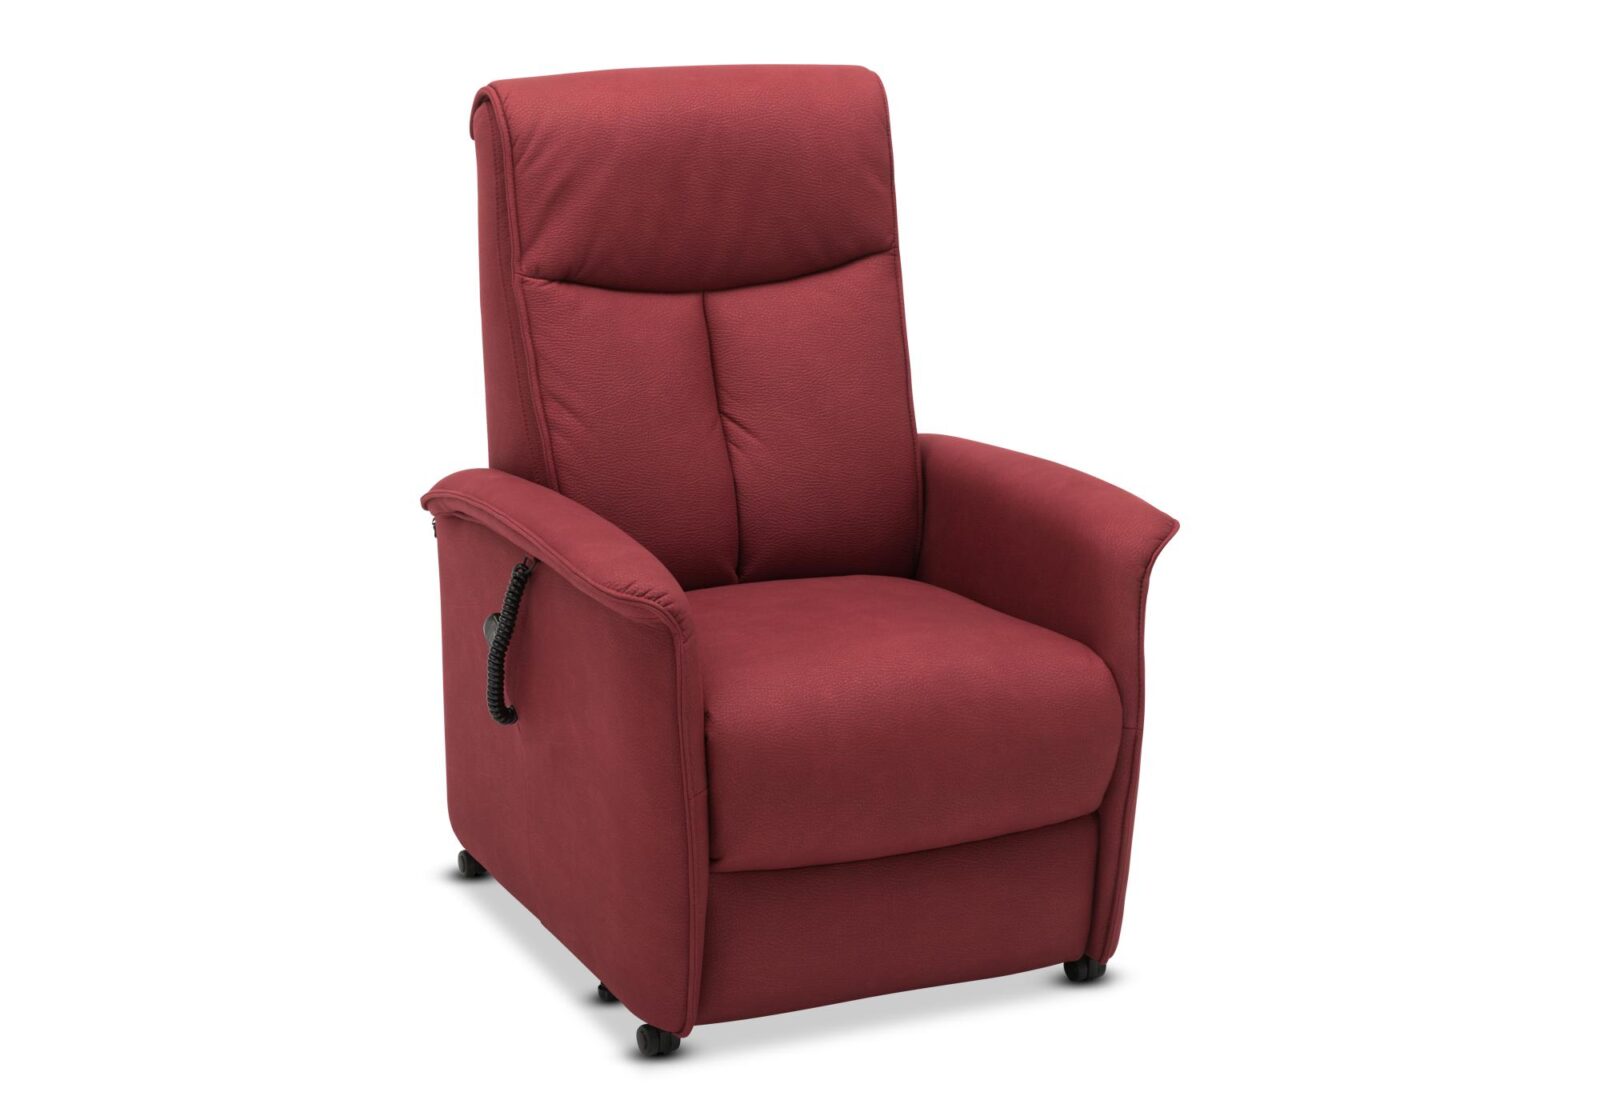 Relaxsessel Madame mit 2-Motoren. Bezug: Stoff. Farbe: Rot. Erhältlich bei Möbel Gallati.